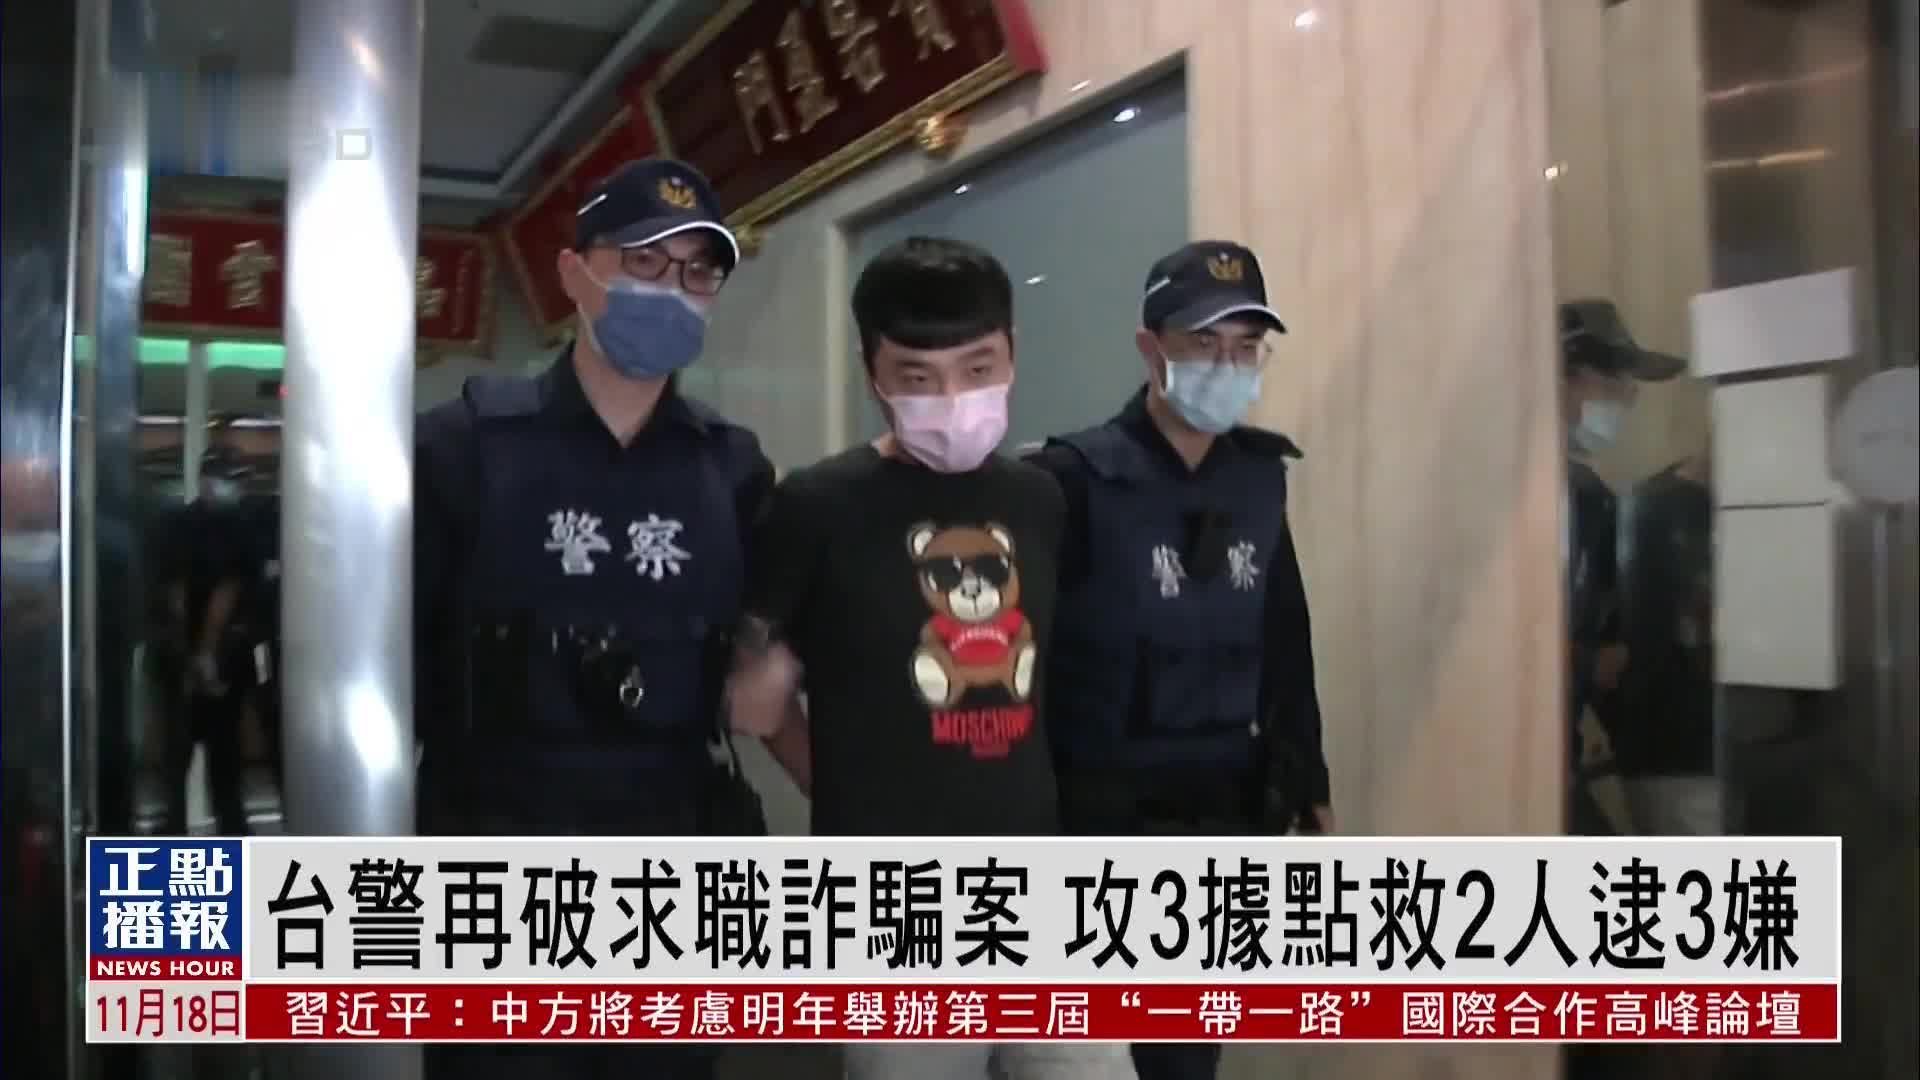 台湾警方再破求职诈骗案 攻3据点救2人逮捕3名嫌犯